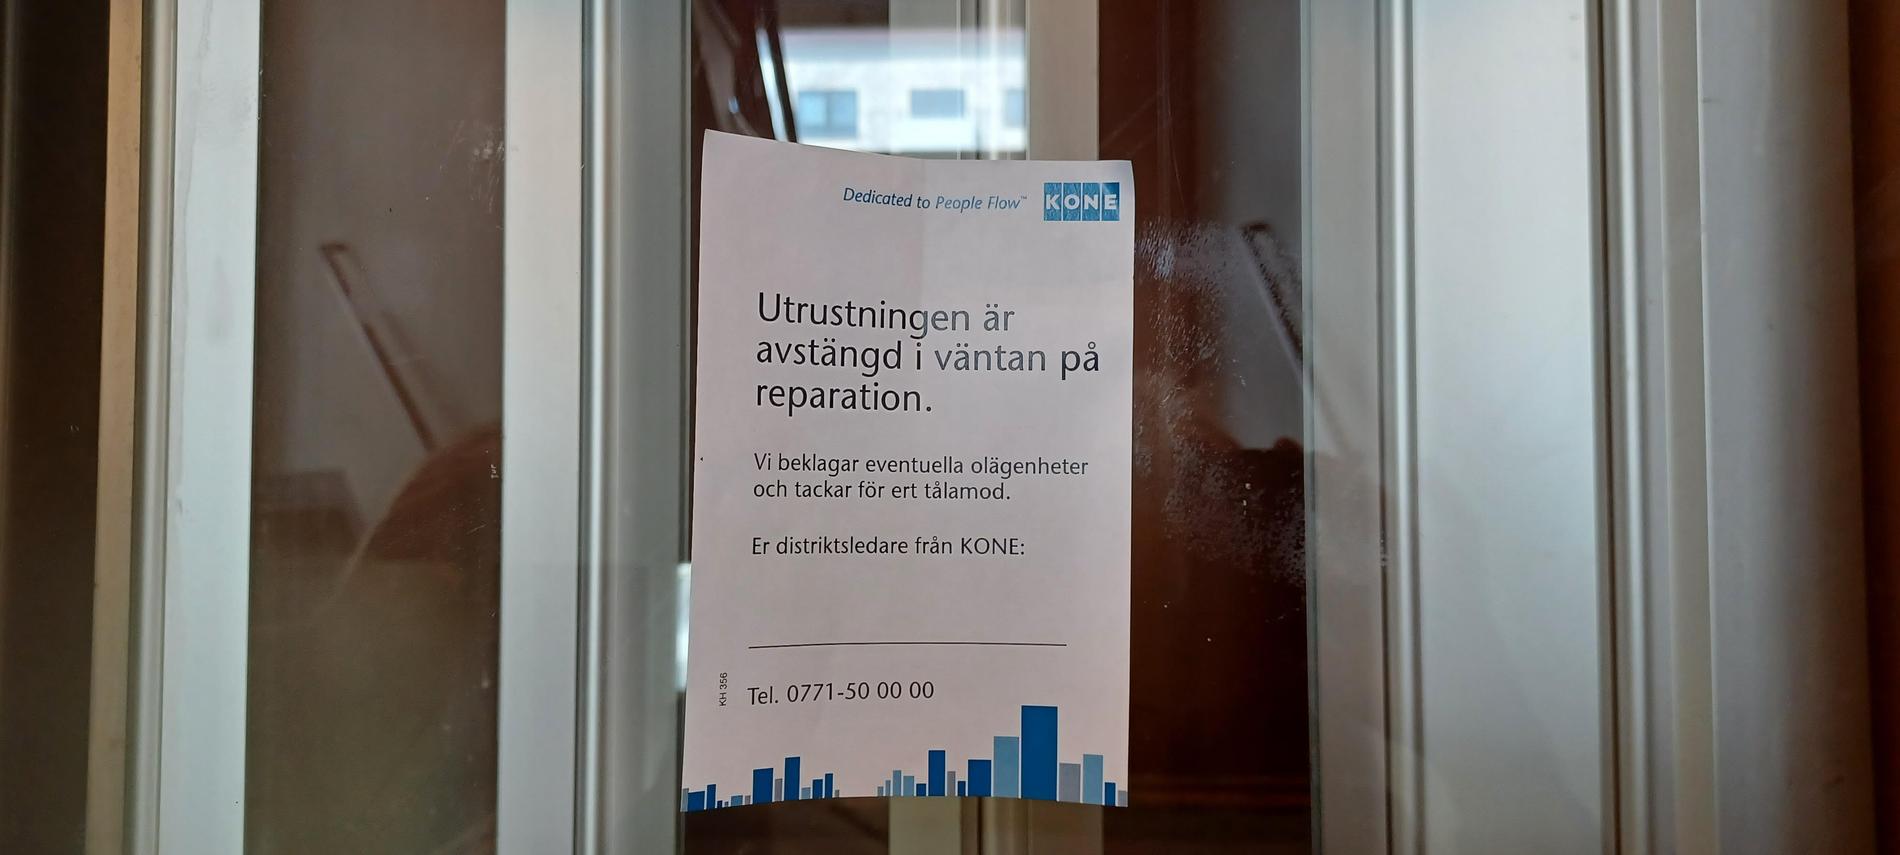 När Aftonbladet är på plats under fredagen är hissen avstängd.